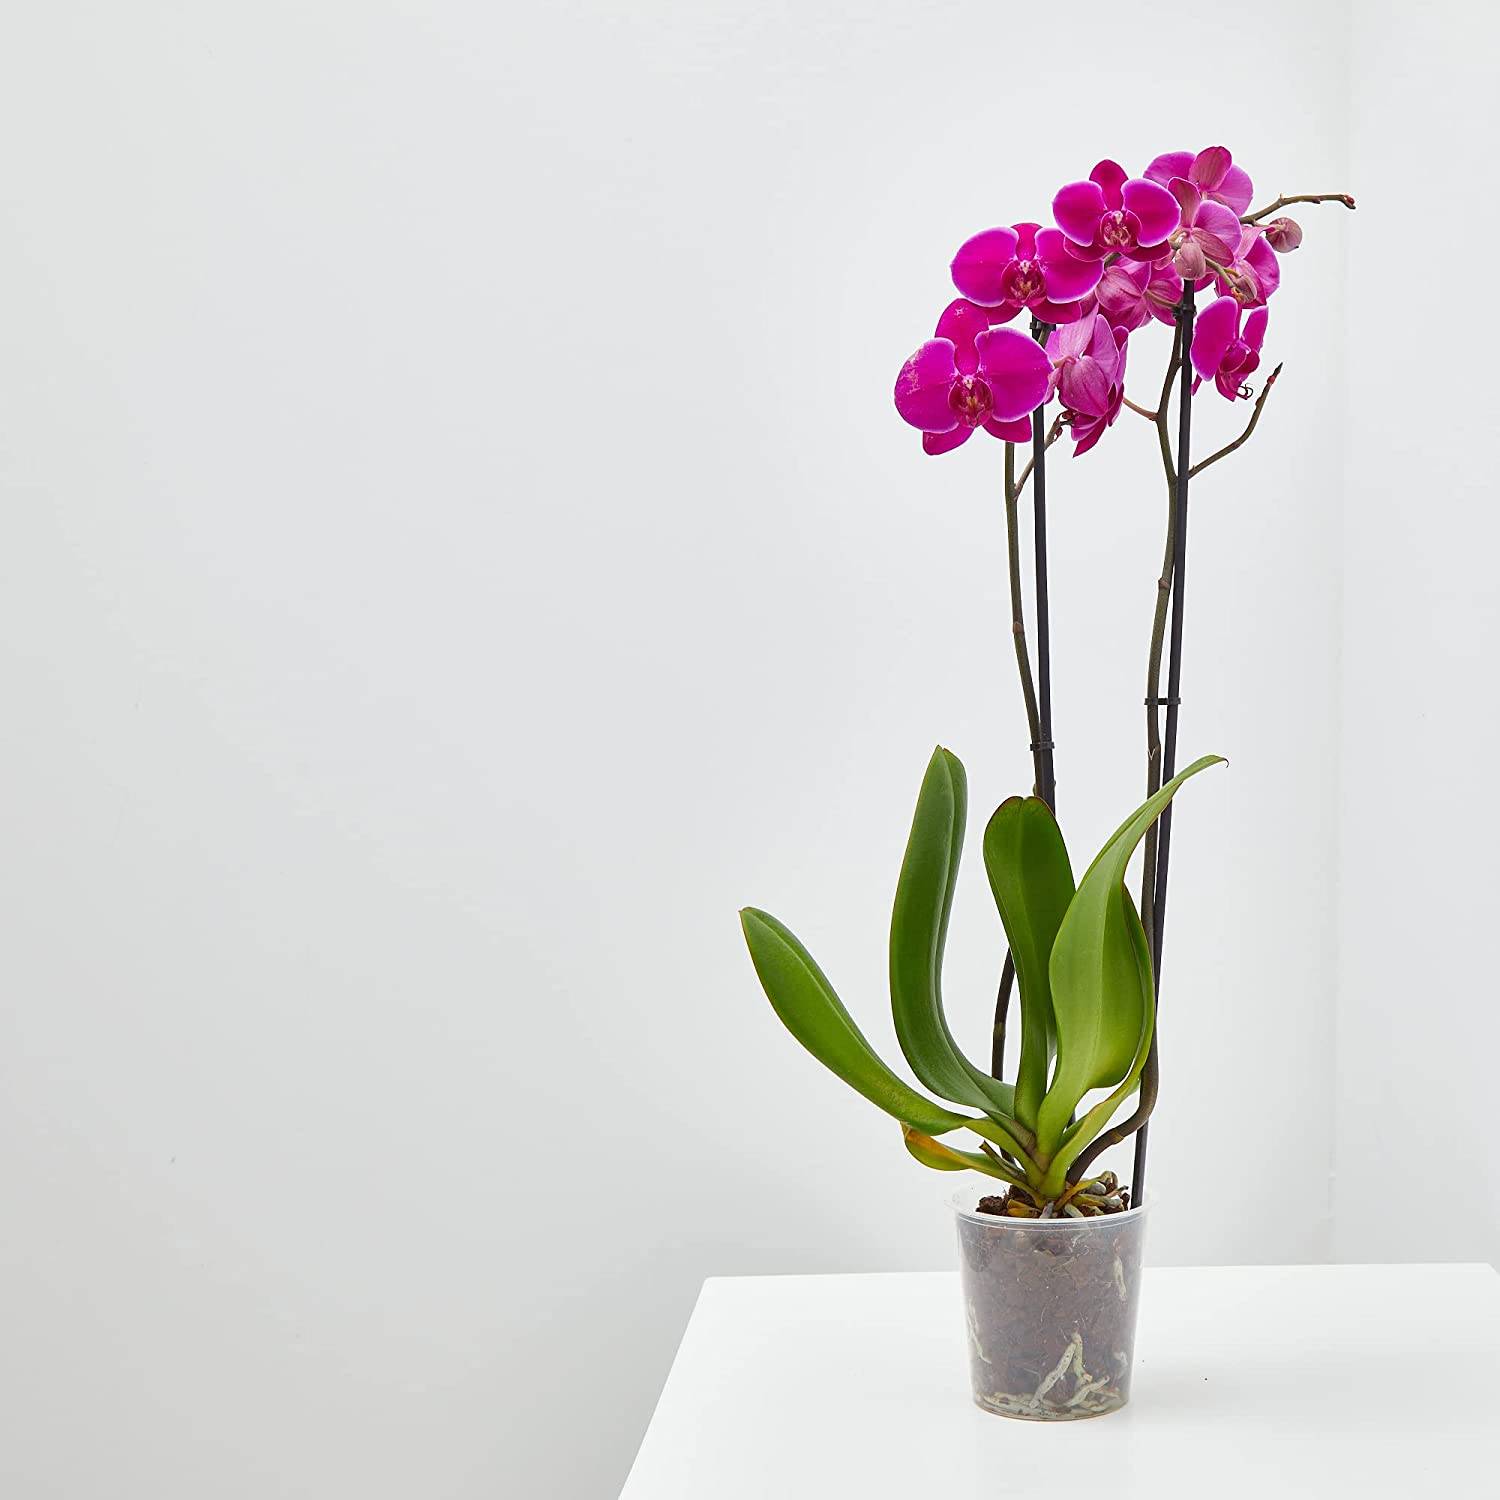 Plantas de Amazon bonitas: una orquídea.